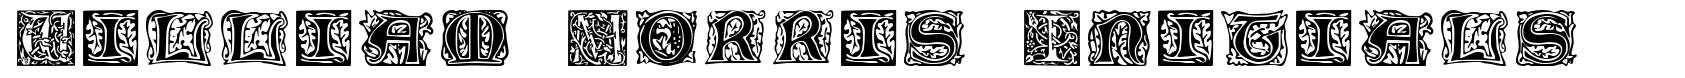 William Morris Initials font